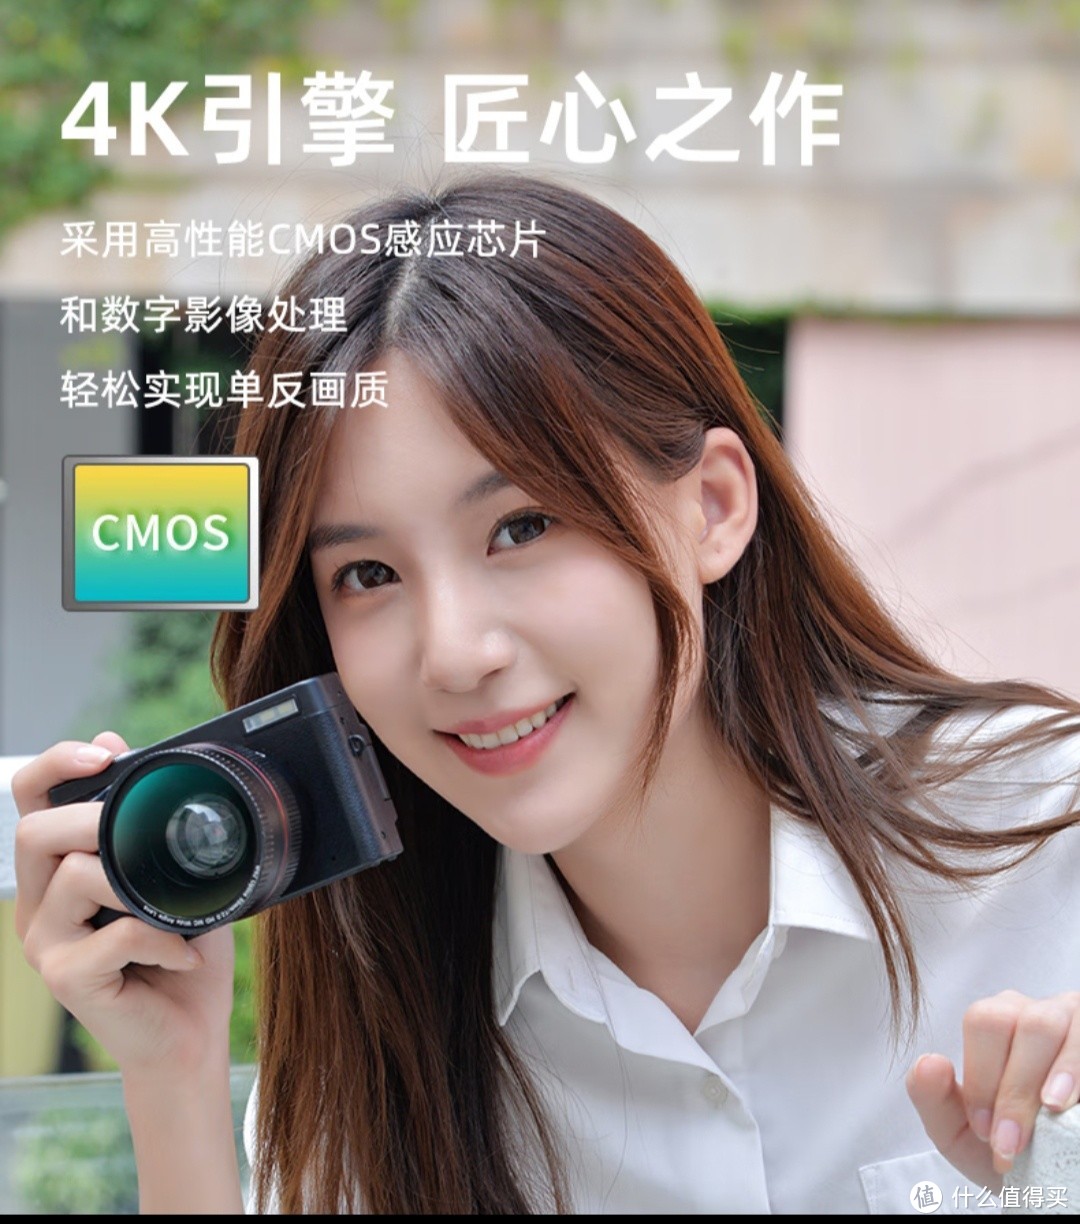 初步 (CHUBU) 数码相机入门级 4K 高清单反微单，让你轻松成为摄影大师!